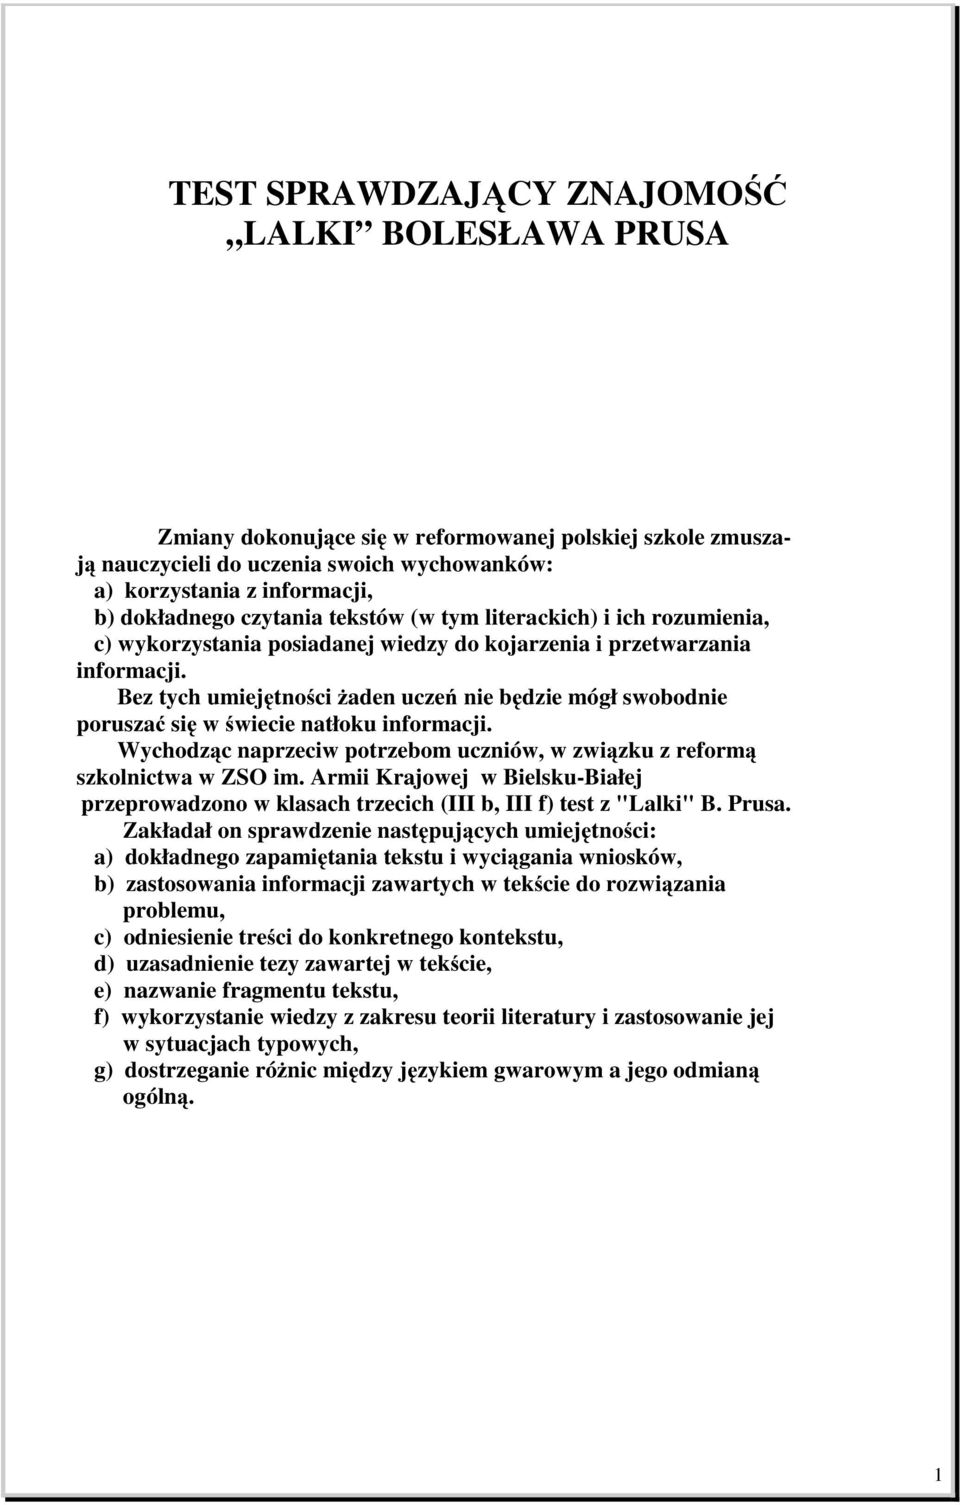 TEST SPRAWDZAJĄCY ZNAJOMOŚĆ LALKI BOLESŁAWA PRUSA - PDF Free Download